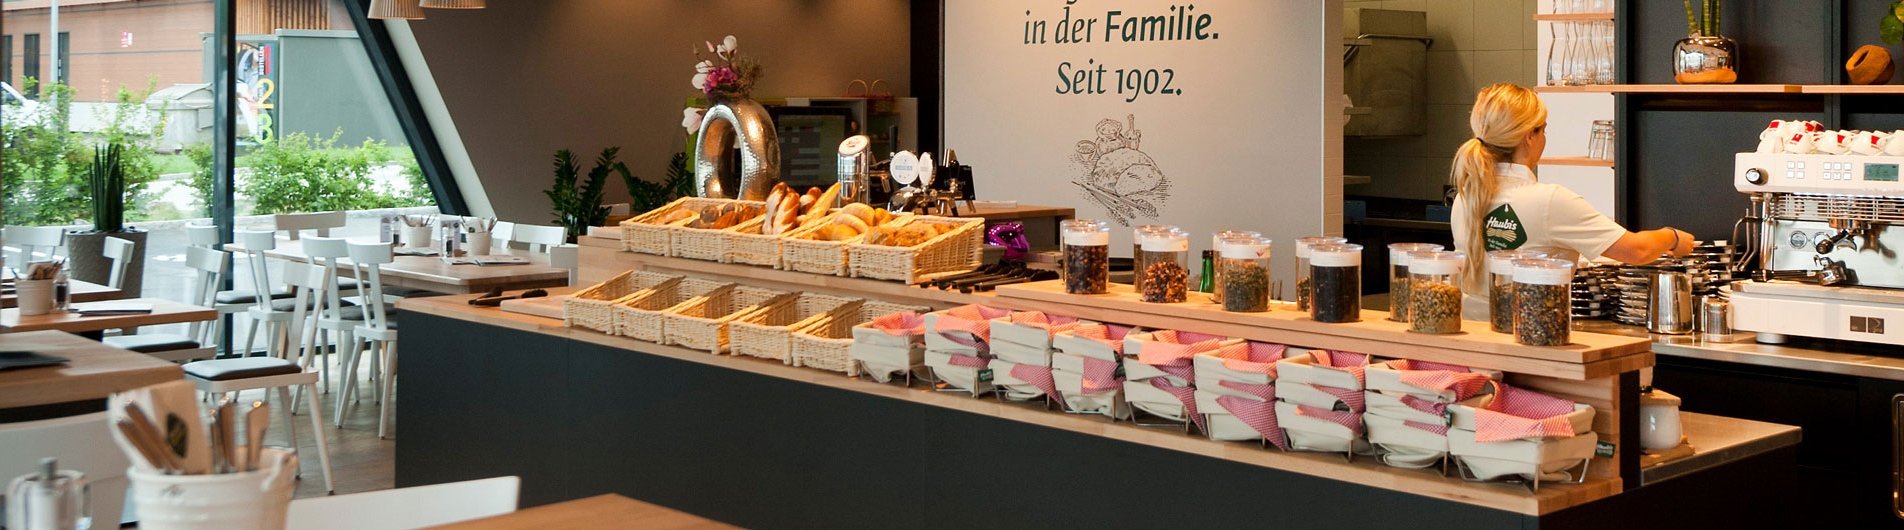 Haubis Backstube und Café in Traun Oberösterreich